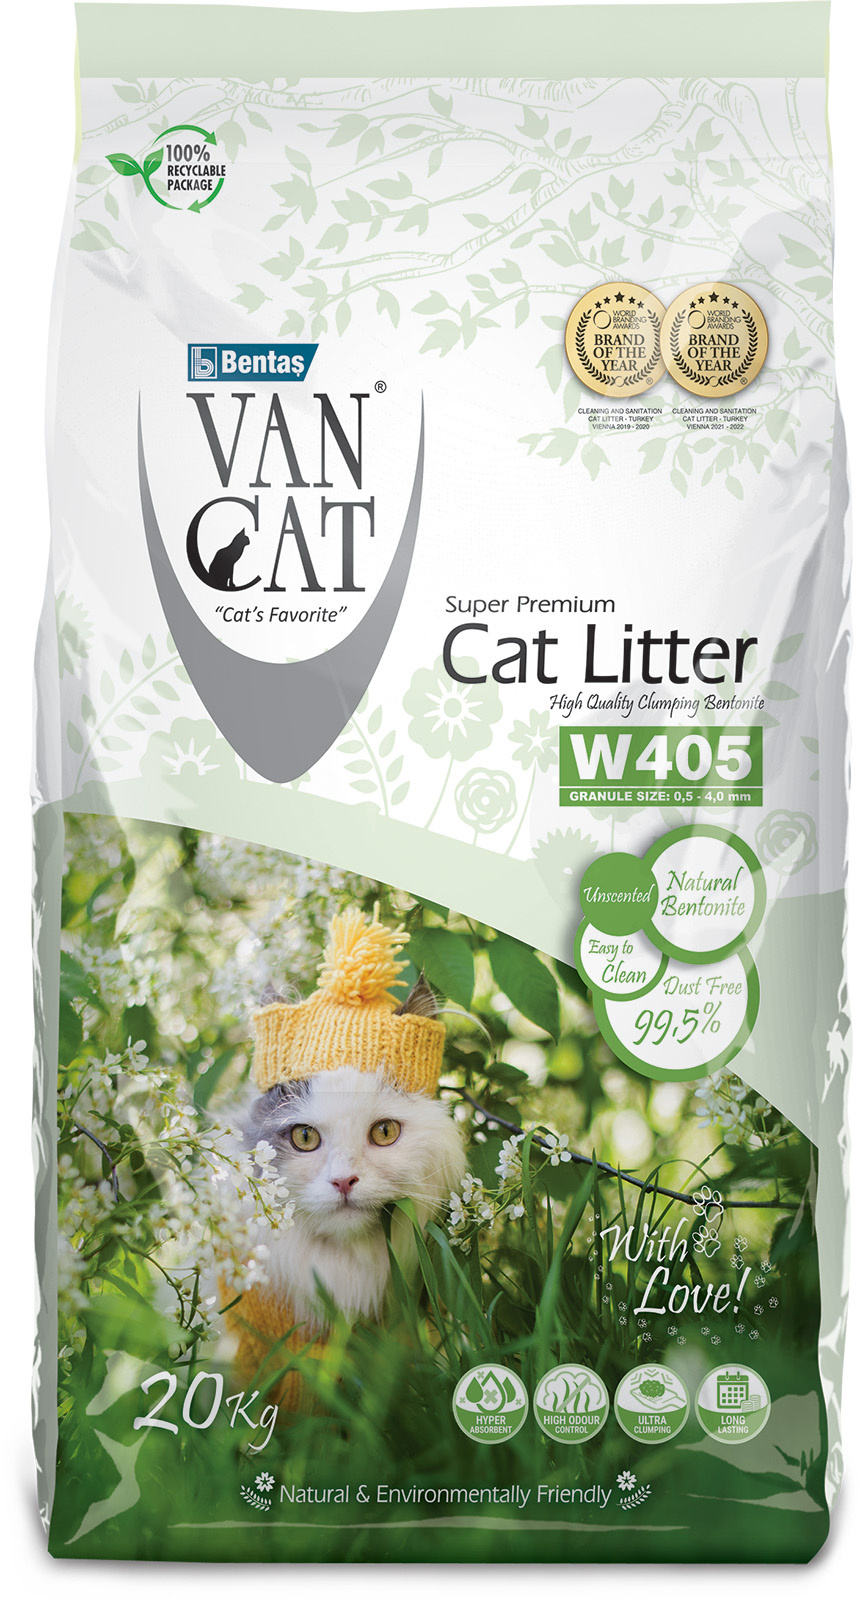 Van Cat Van Cat комкующийся наполнитель 100% натуральный, без пыли, пакет (20 кг) van cat natural наполнитель для кошек 100% натуральный комкующийся без пыли без запаха 20 кг